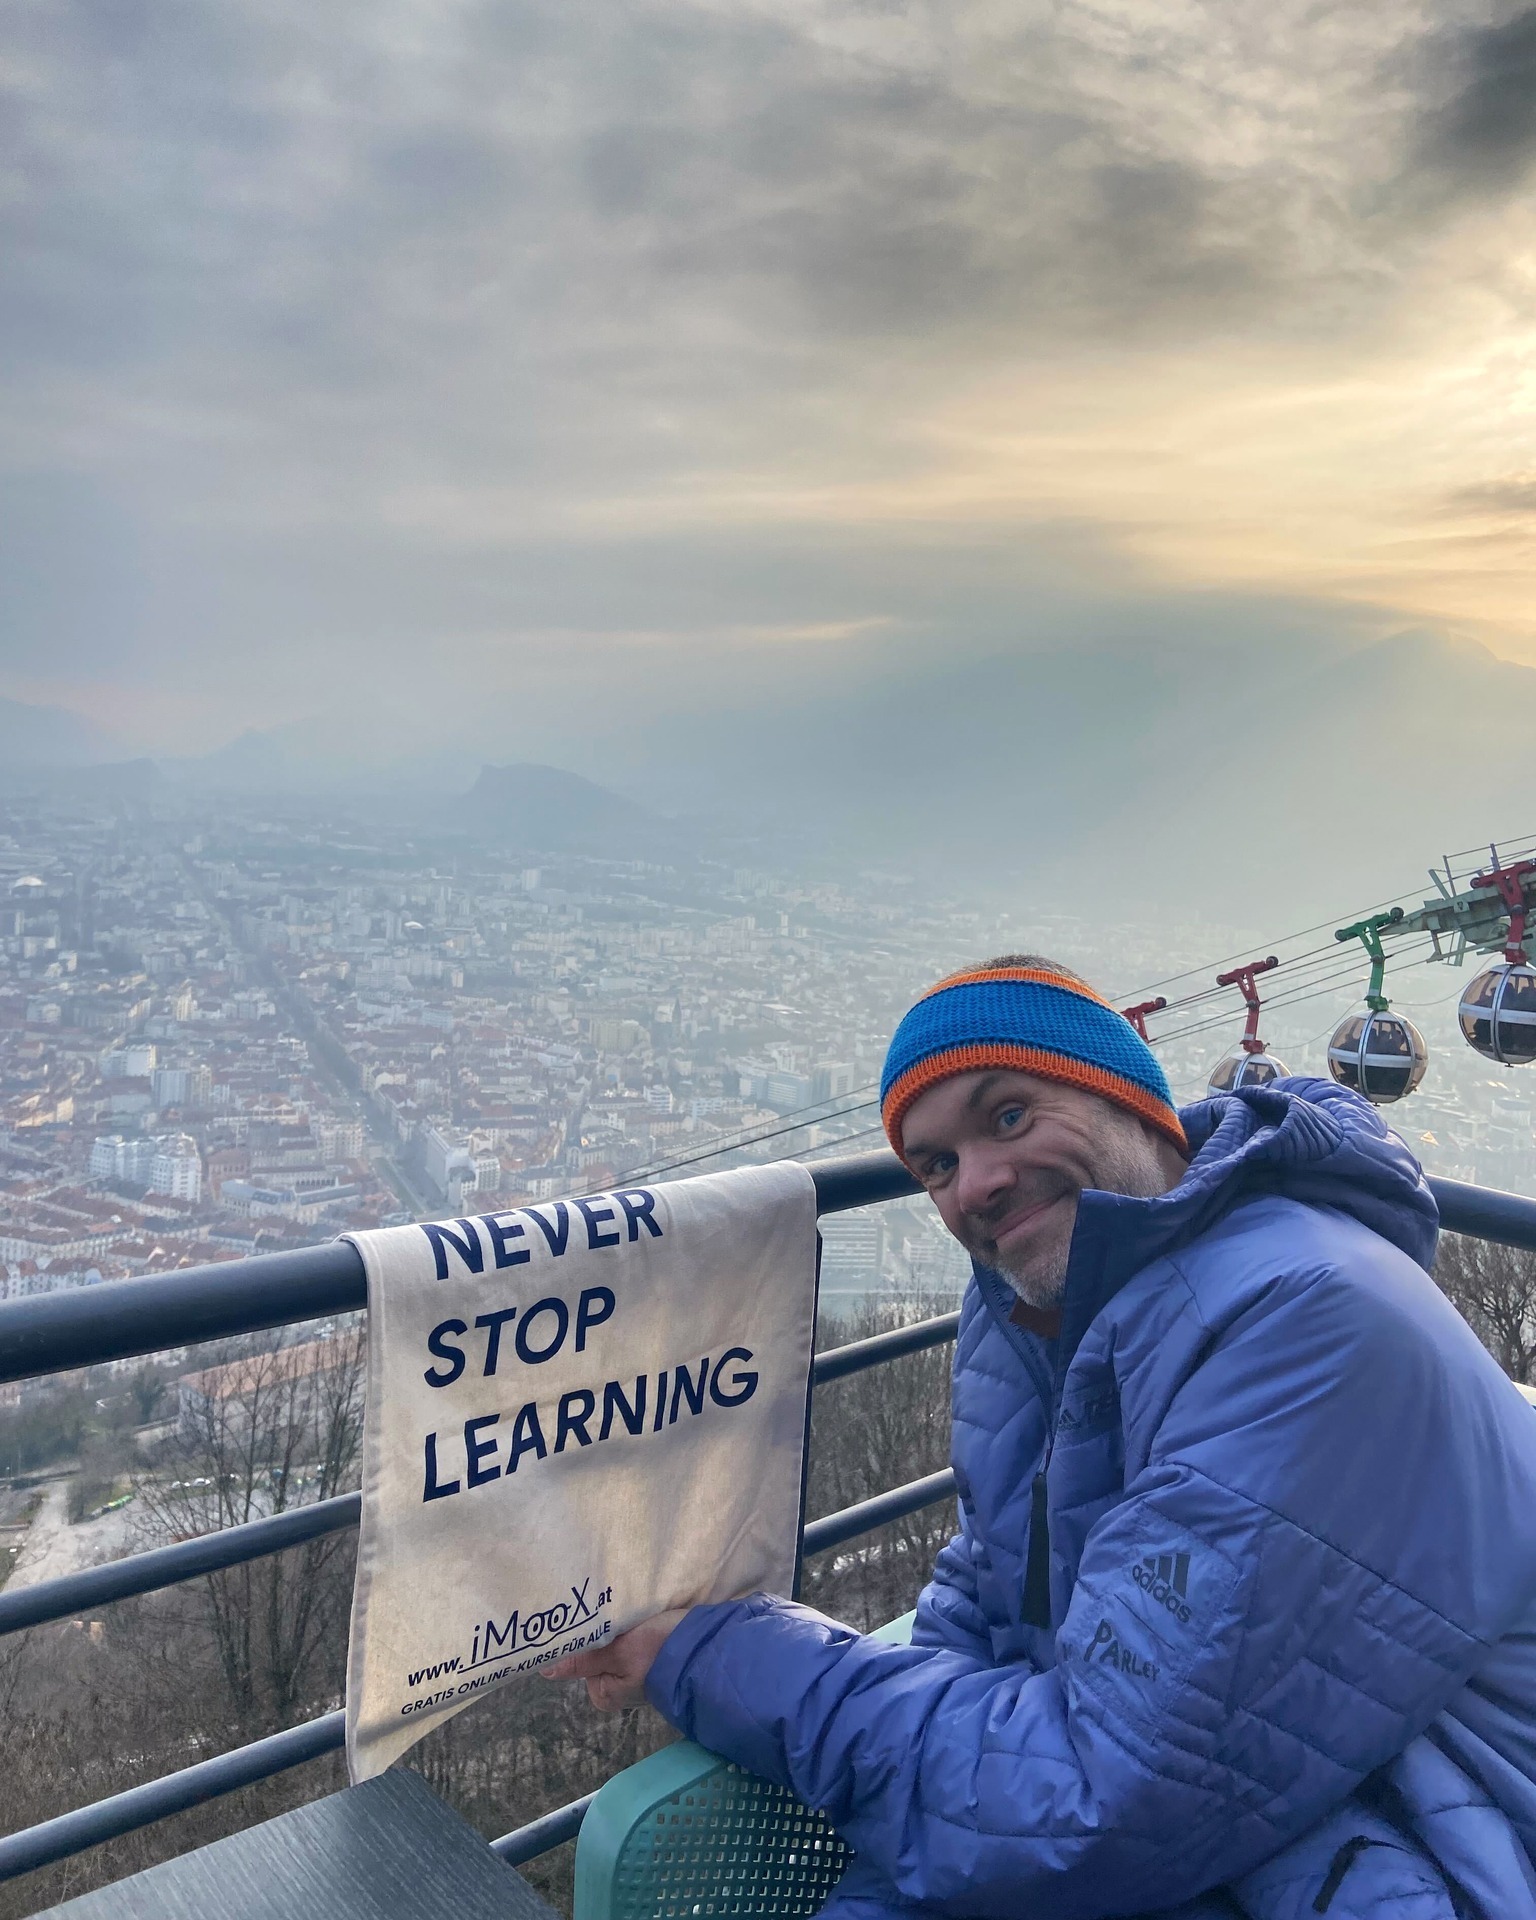 #travelwithimoox über der Stadt Grenoble 🇫🇷 

NEVER STOP LEARNING!

Bilden dich mit unserem ...